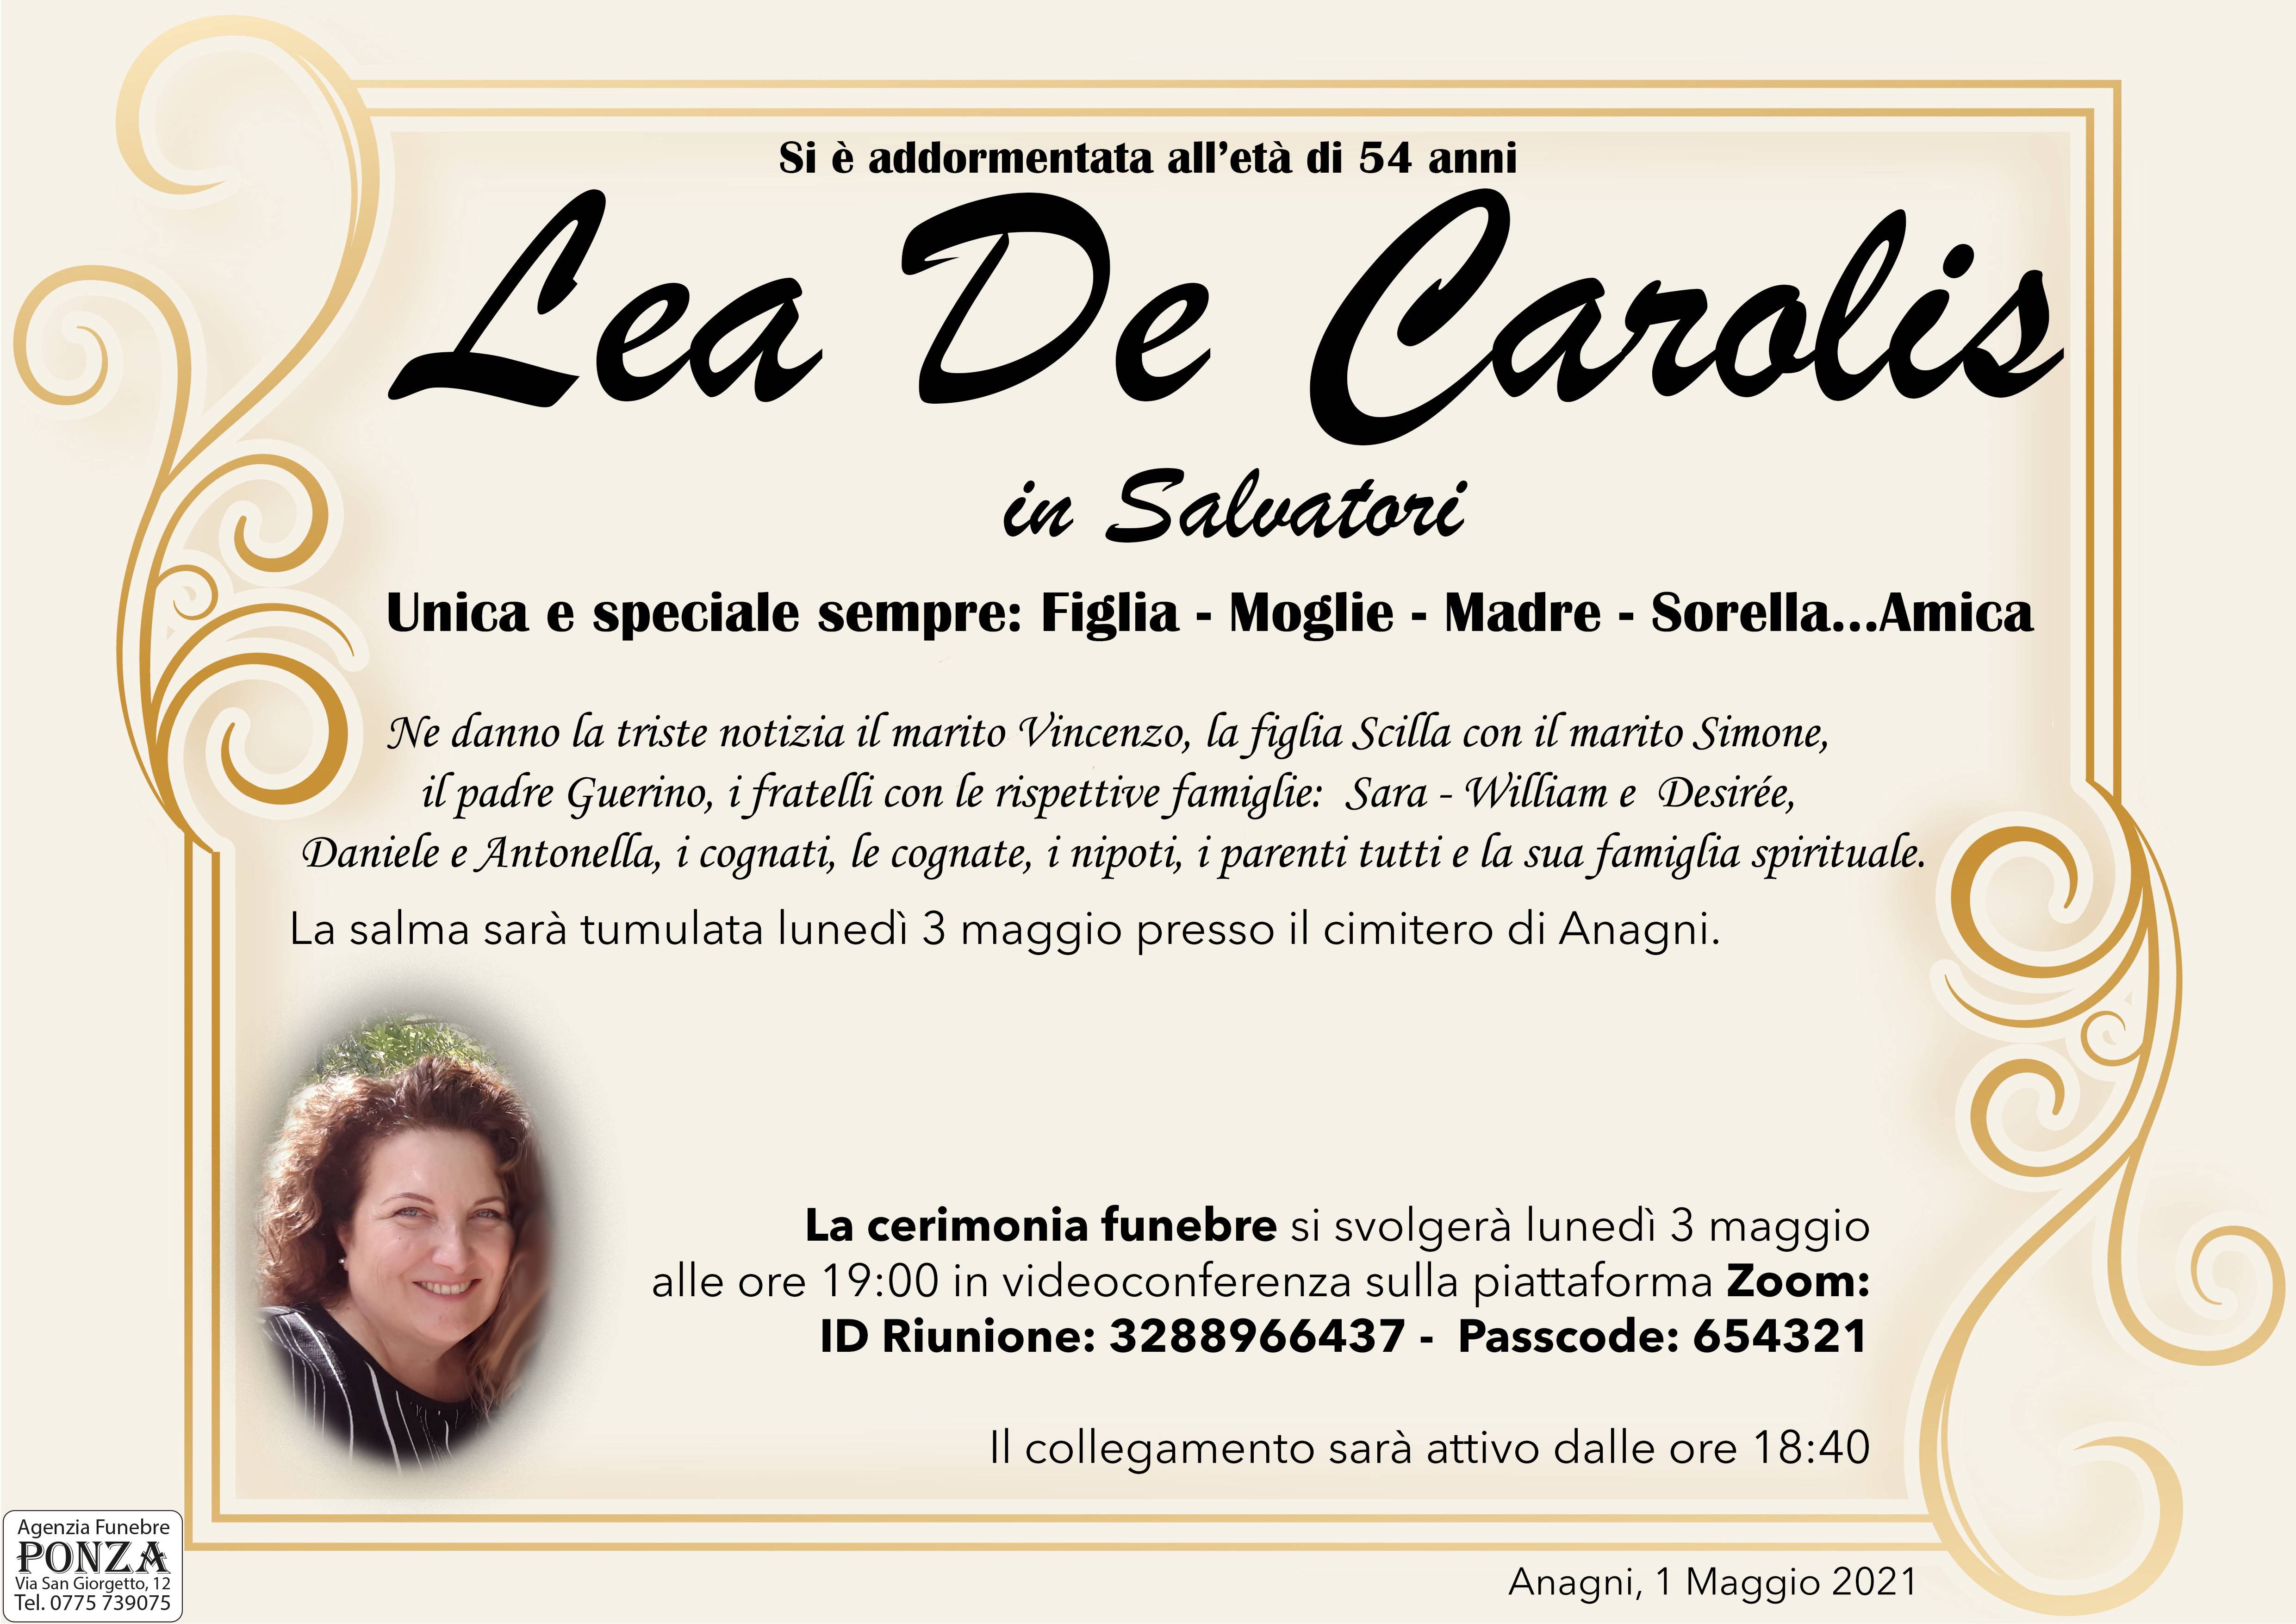 Lea De Carolis